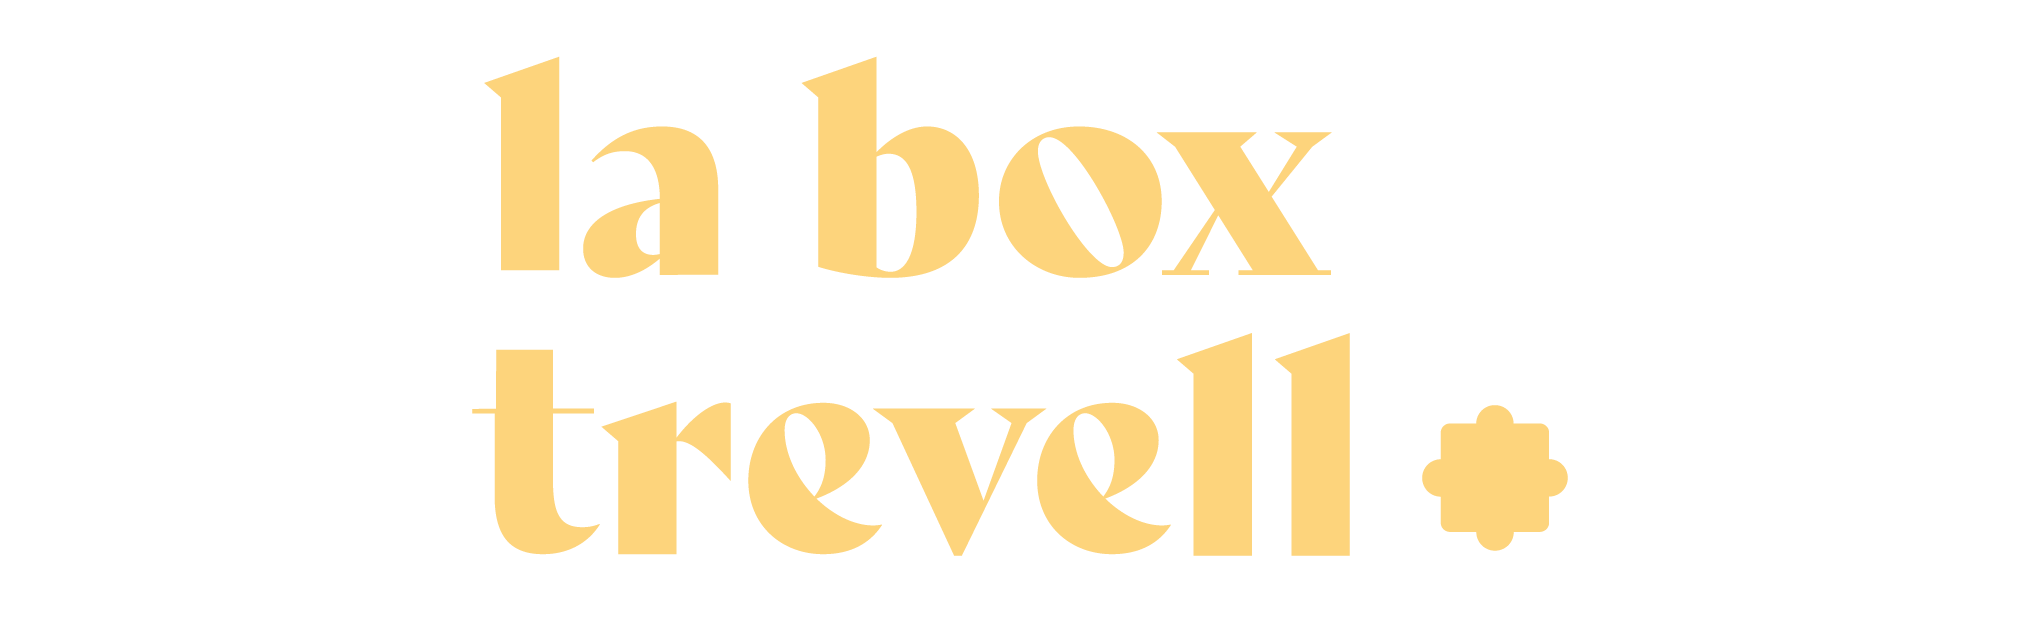 la box trevell puzzle